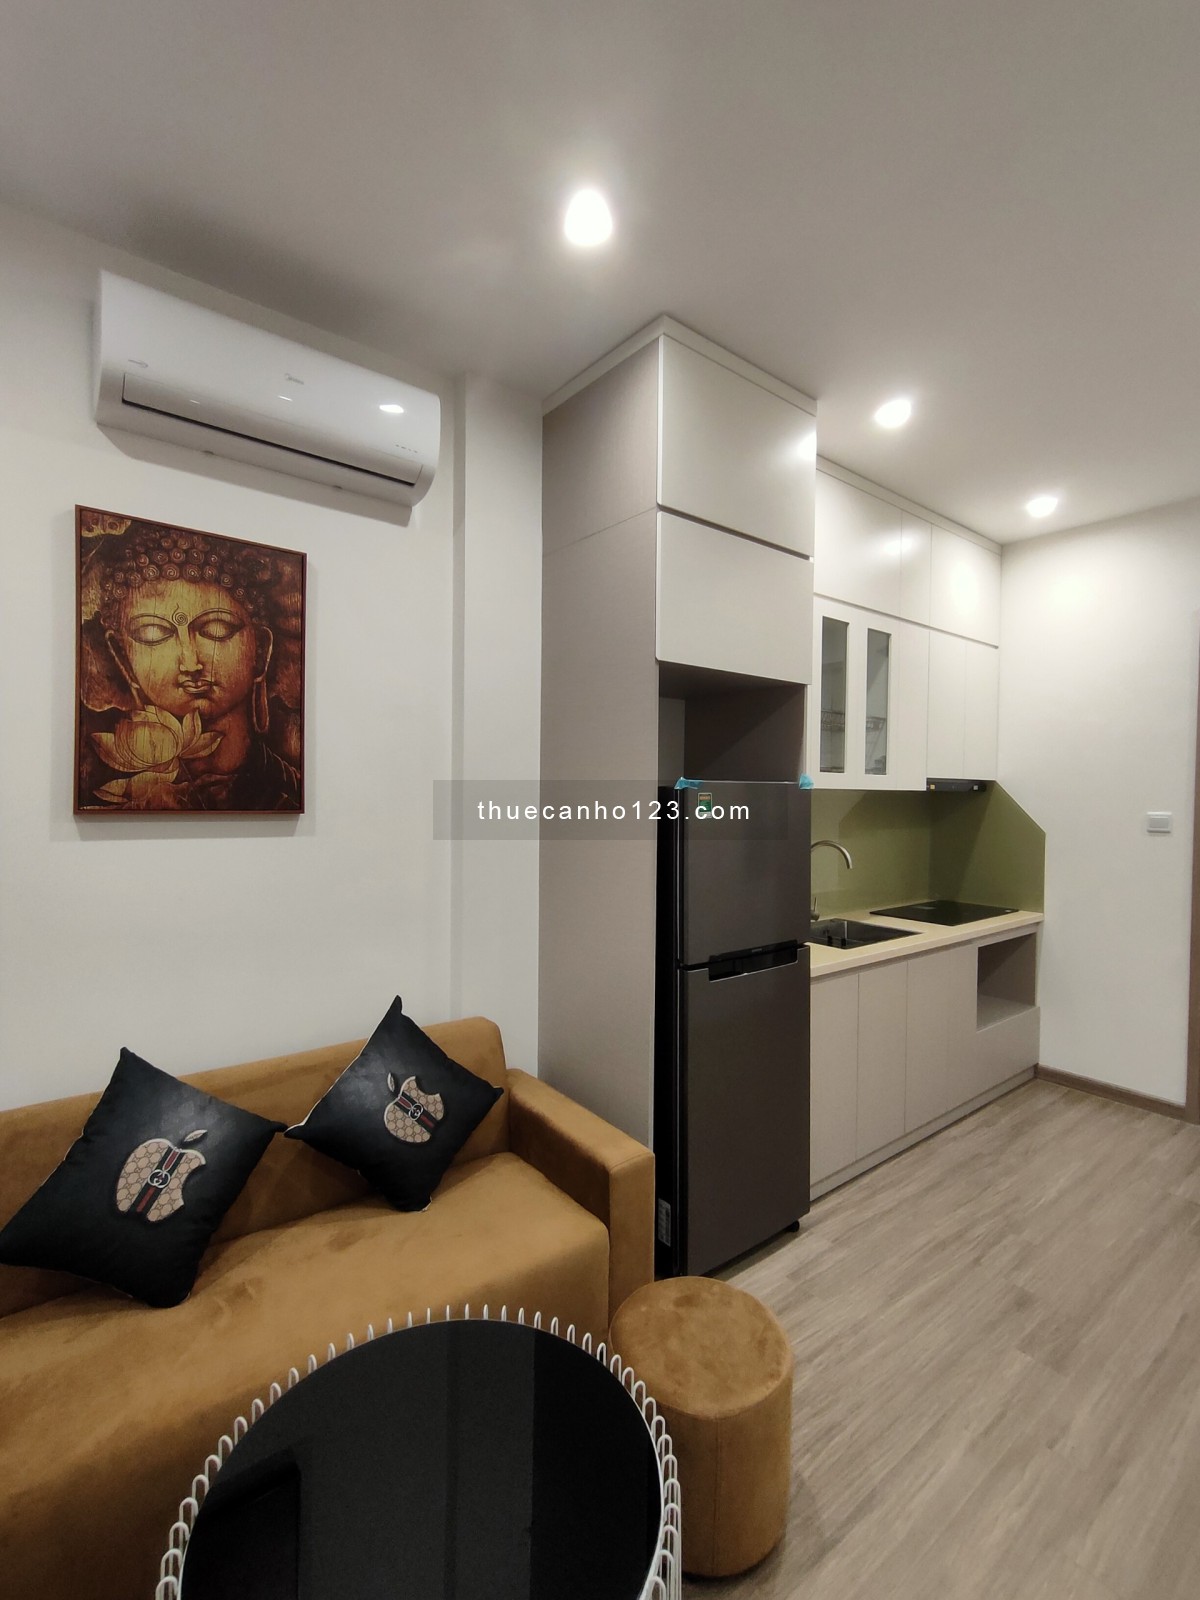 Cho thuê căn hộ giá tốt ở dự án hot nhất nhì Hà Nội, liên hệ 0336783278